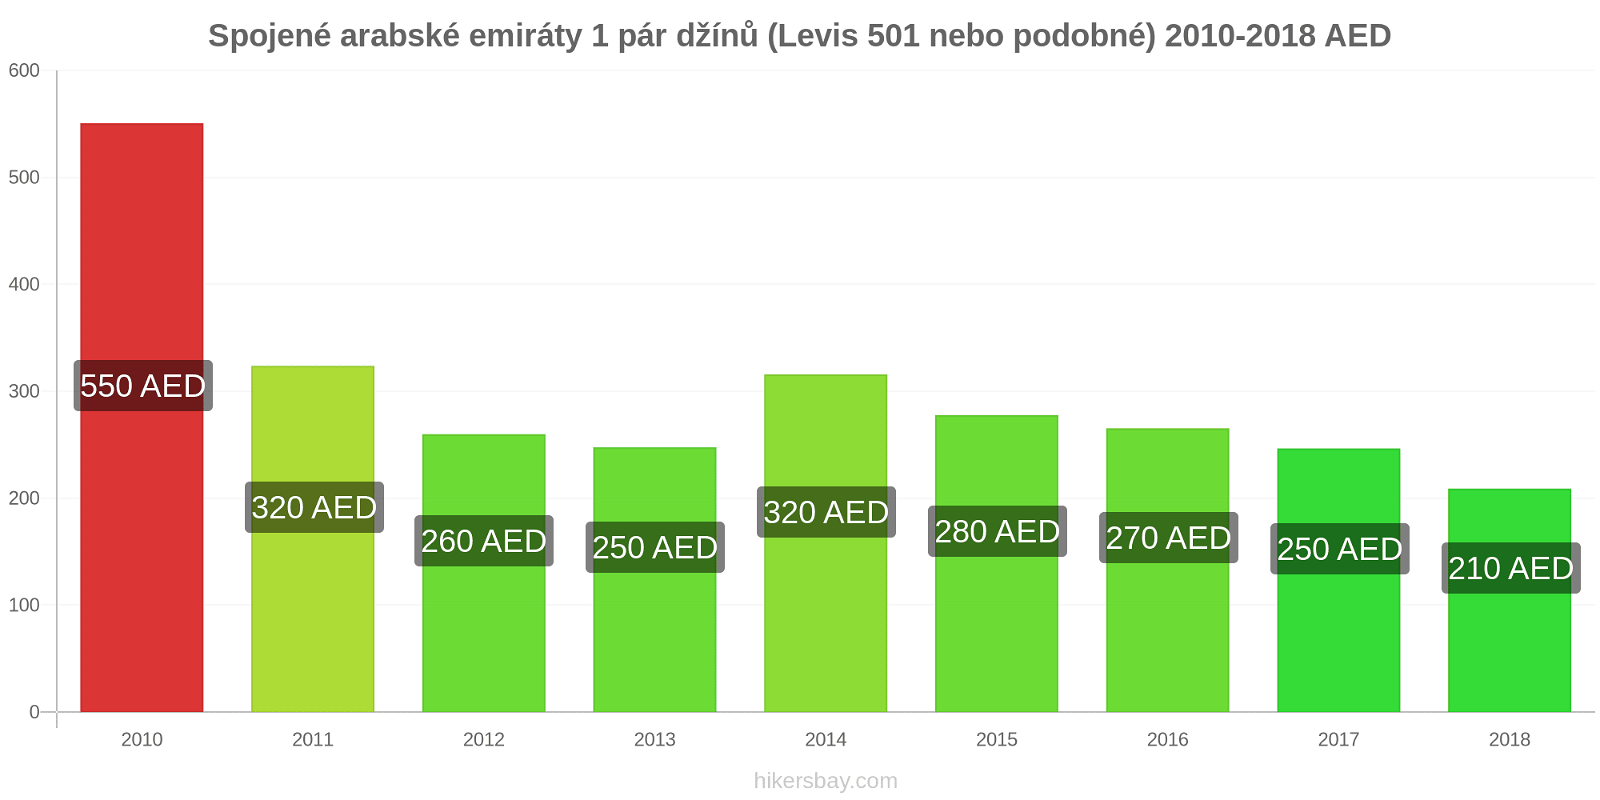 Spojené arabské emiráty změny cen 1 pár džínů (Levis 501 nebo podobné) hikersbay.com